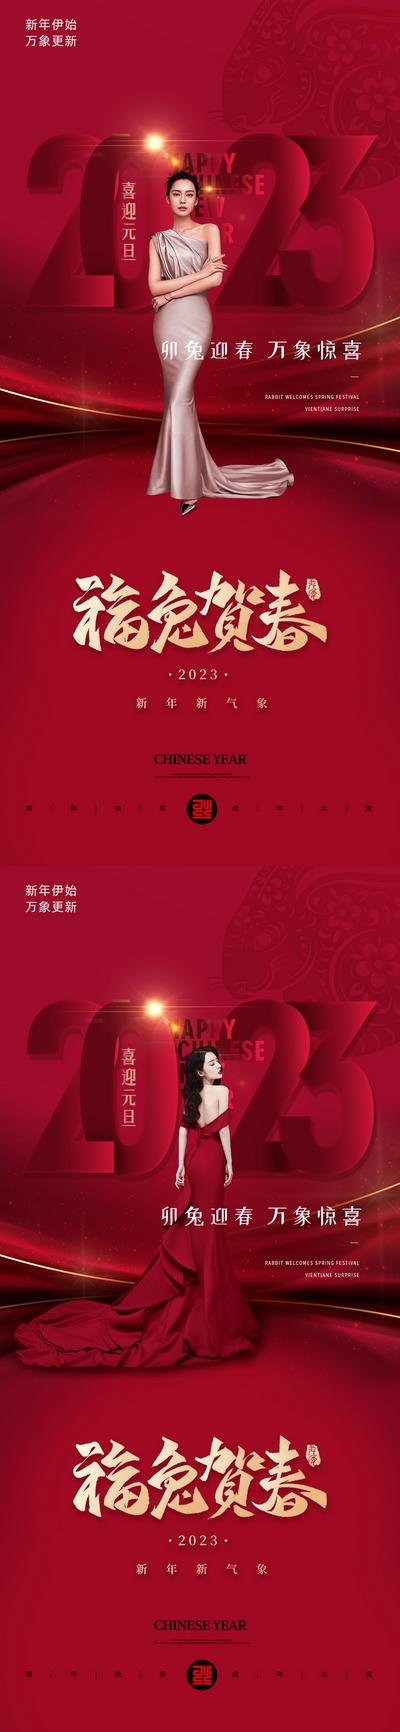 南门网 海报 医美 公历节日 元旦 兔年 2023 红金 人物 系列